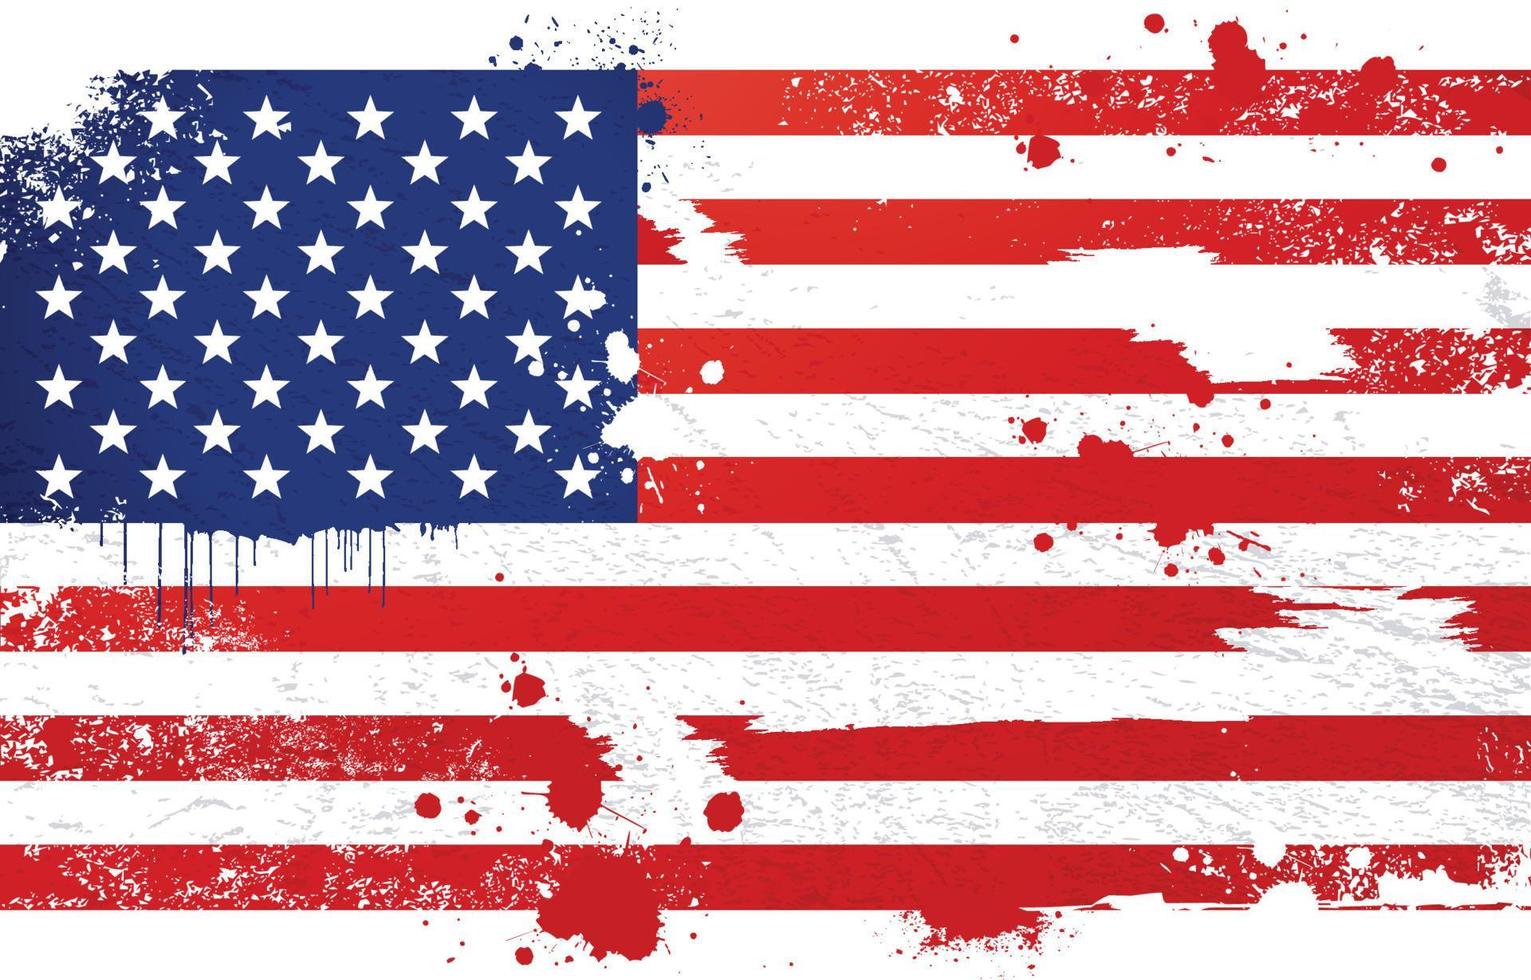 Amerikaanse vlag met grunge-effect vector